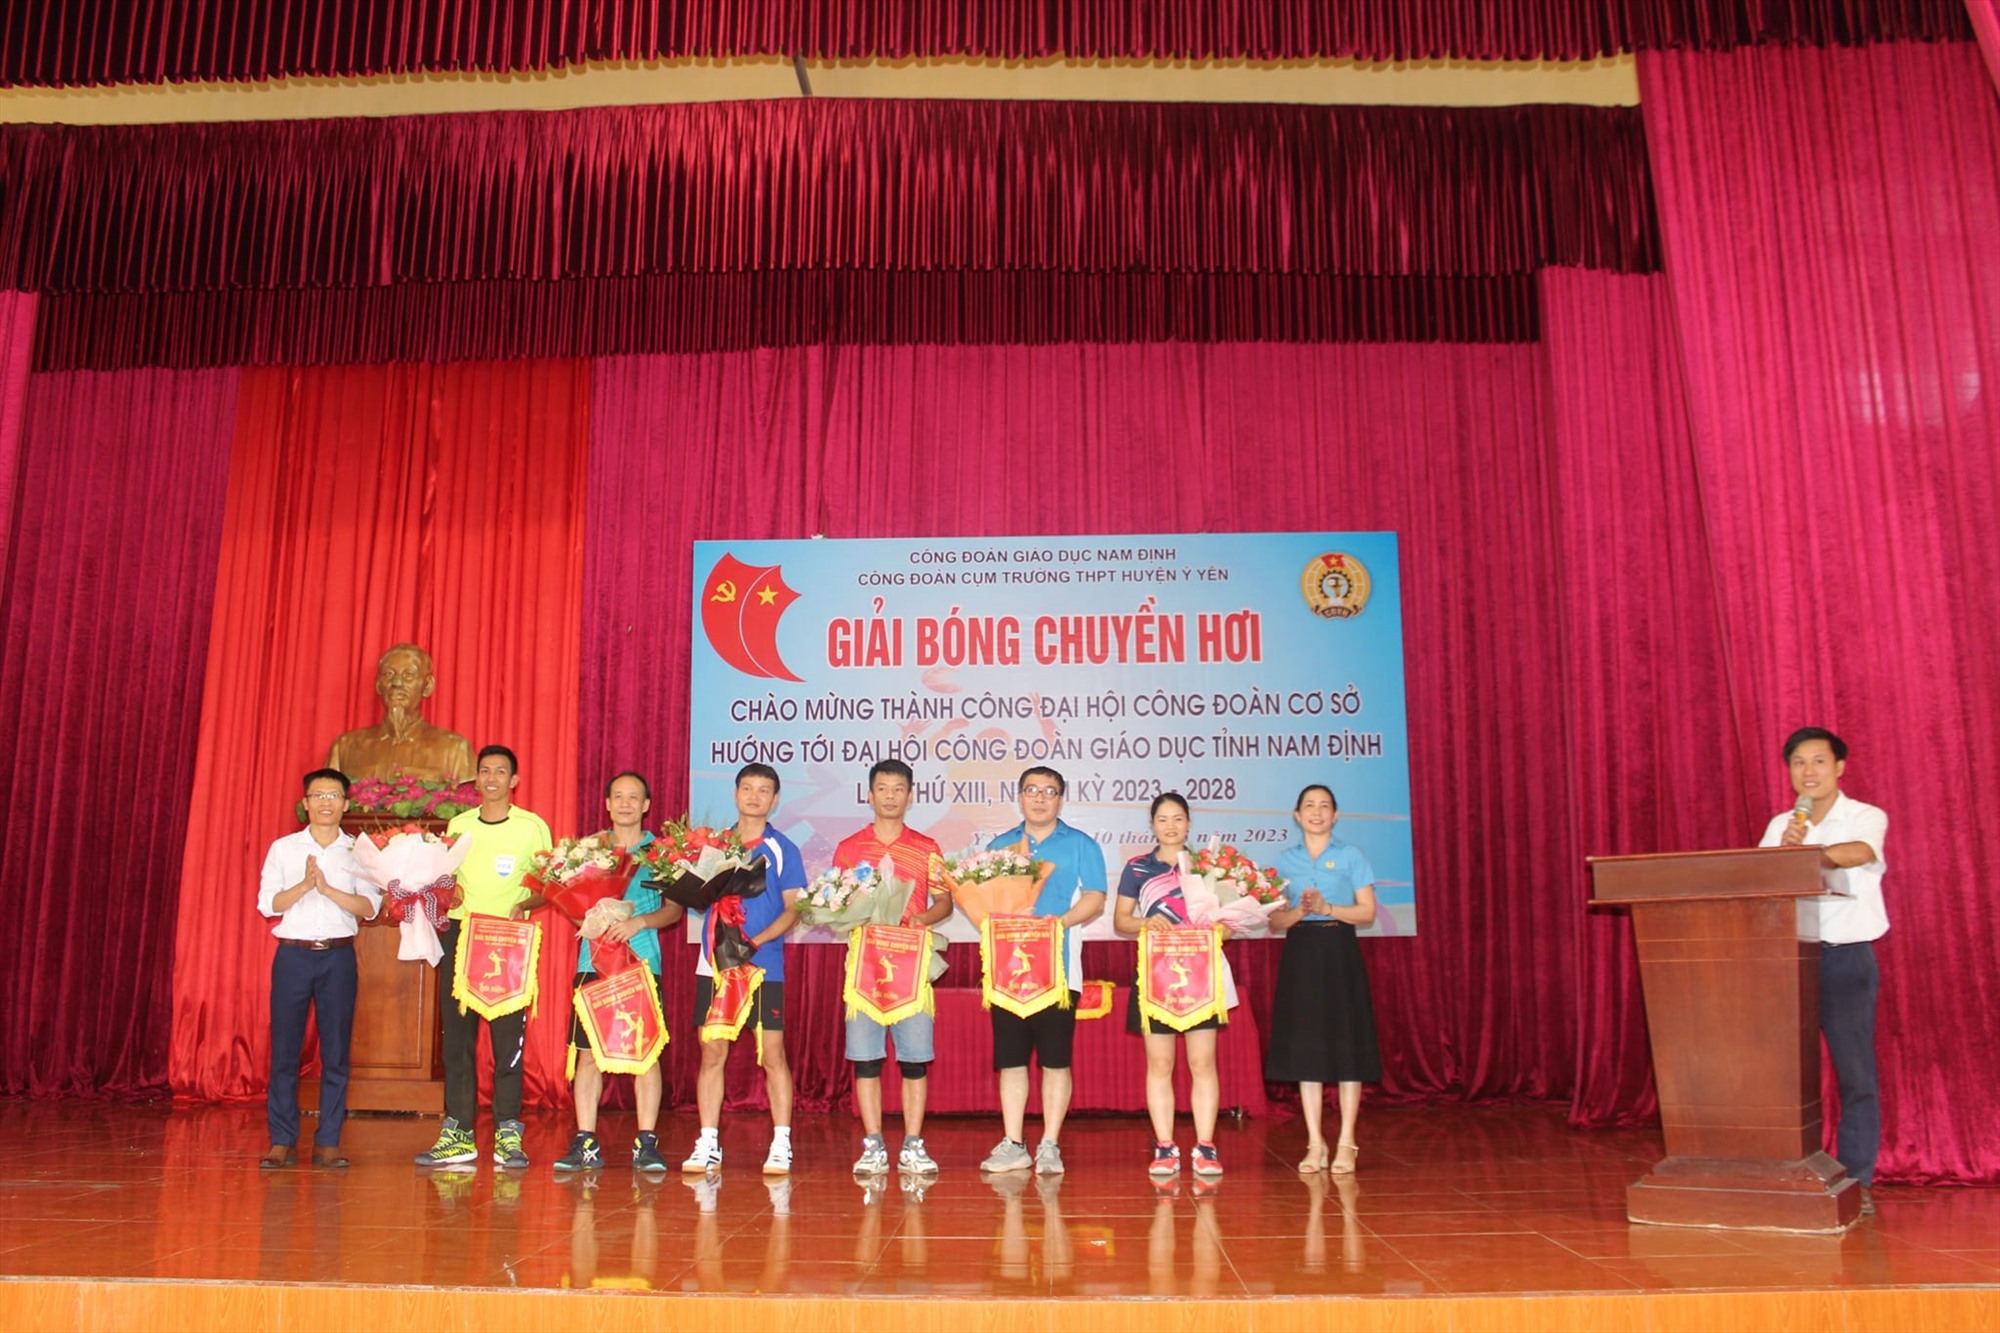 Công đoàn Giáo dục tỉnh Nam Định chăm lo tốt cho đoàn viên